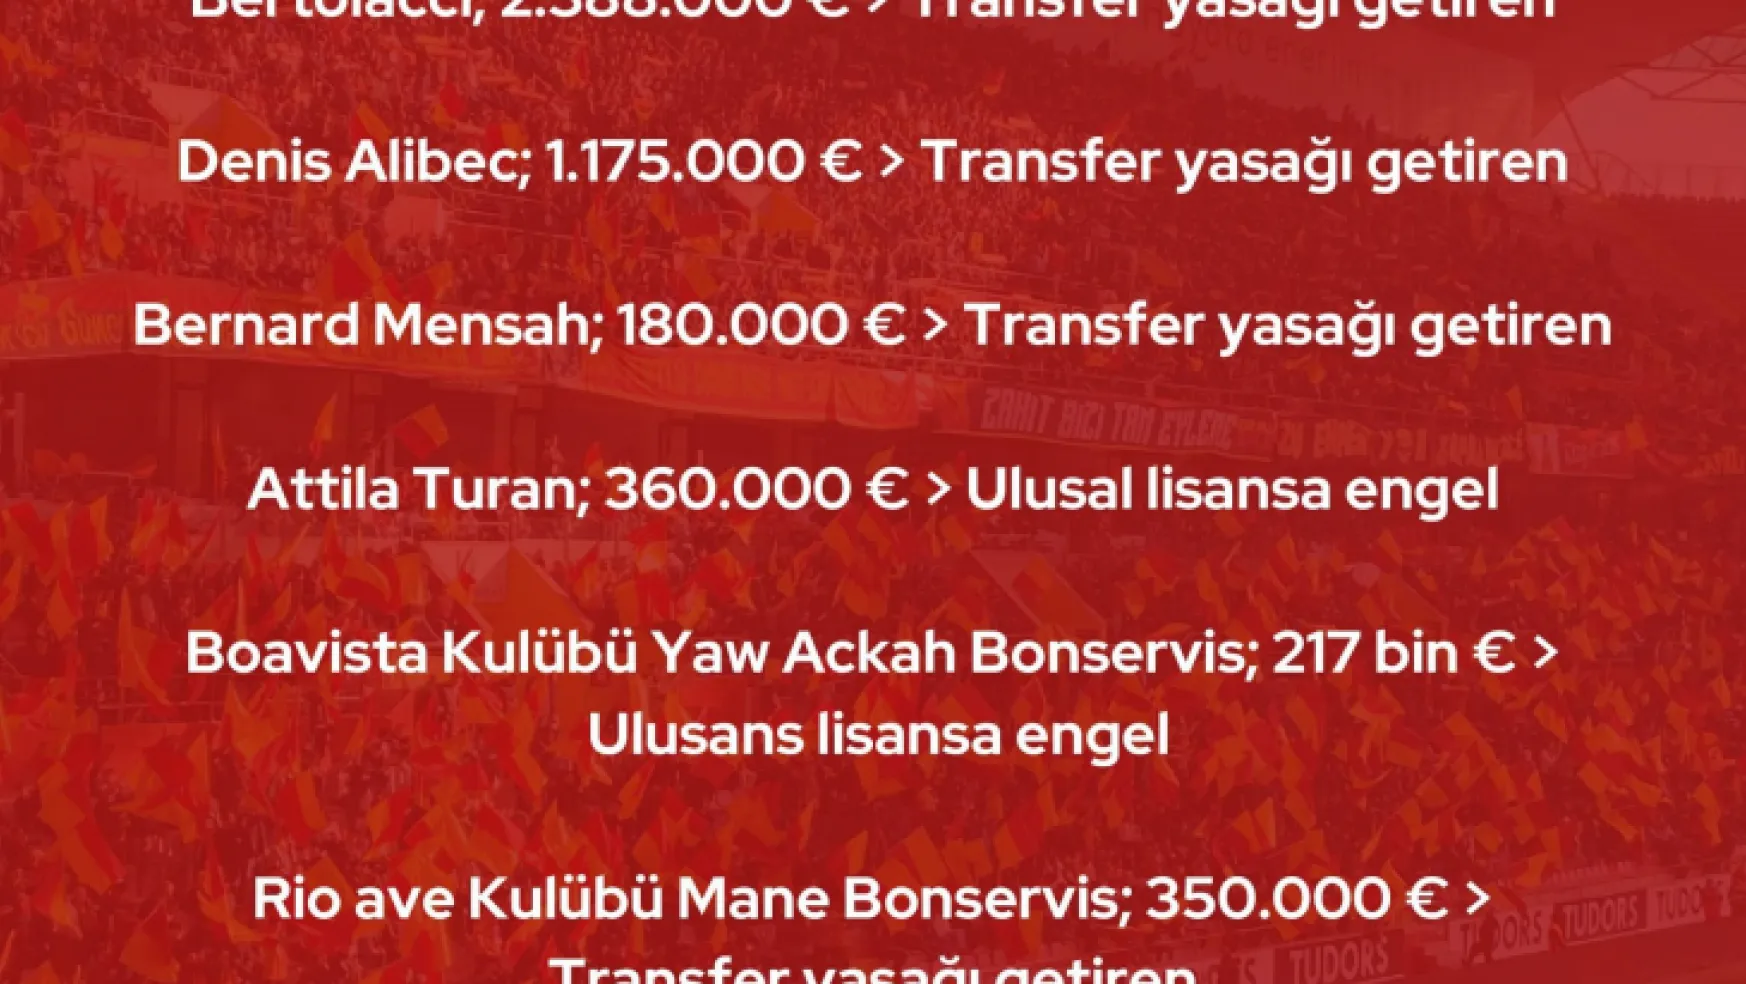 Kayserispor'un transfer yasağının detayları açıklandı